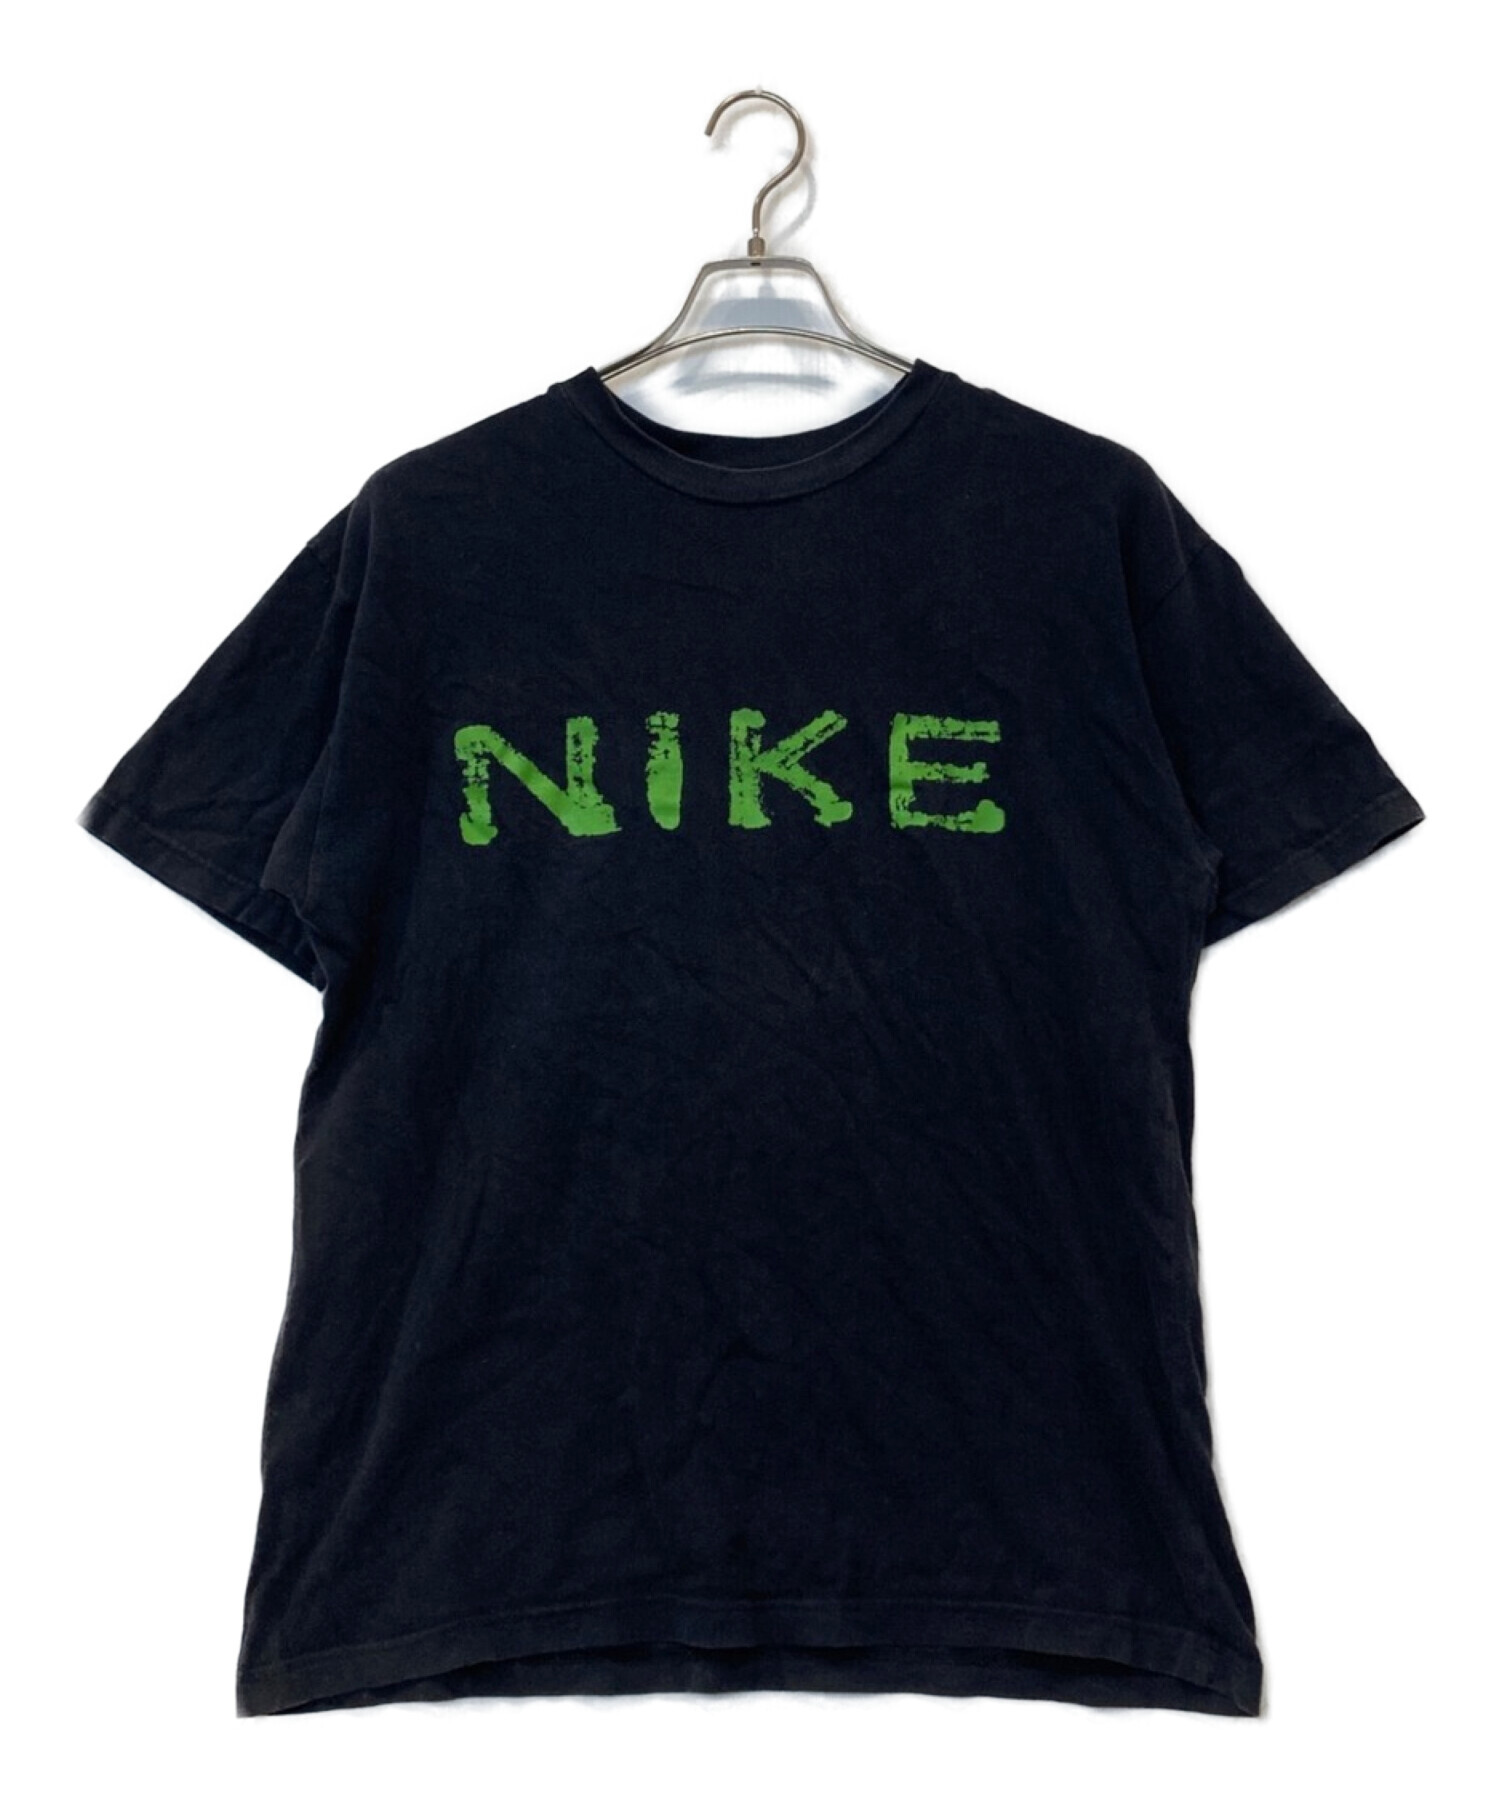 NIKE (ナイキ) 【古着】Tシャツ ブラック サイズ:M